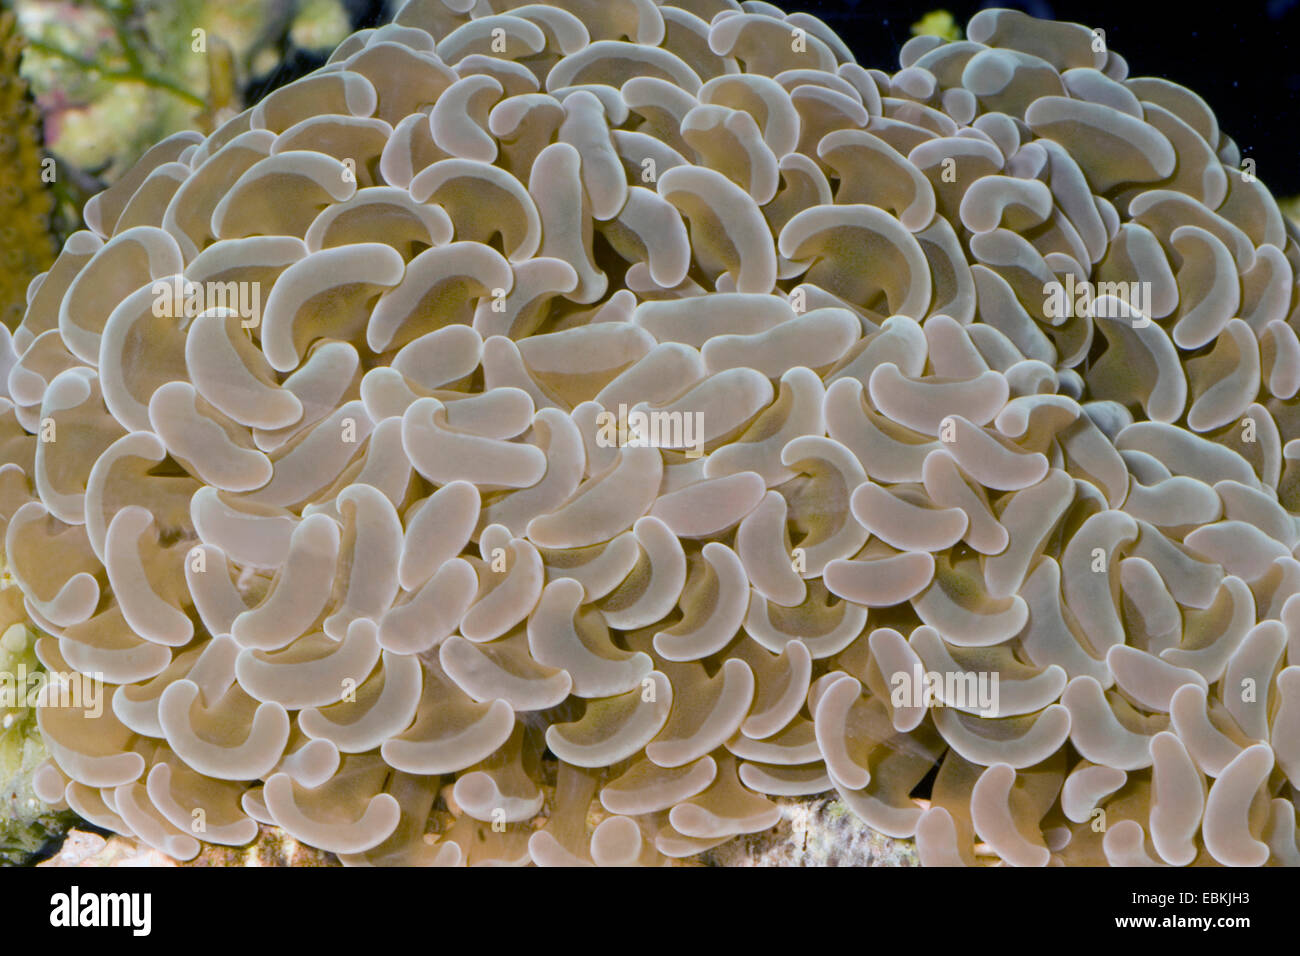 Dent-marteau, corail, corail ancre Euphyllia ancora Marteau (CORA), close-up view Banque D'Images